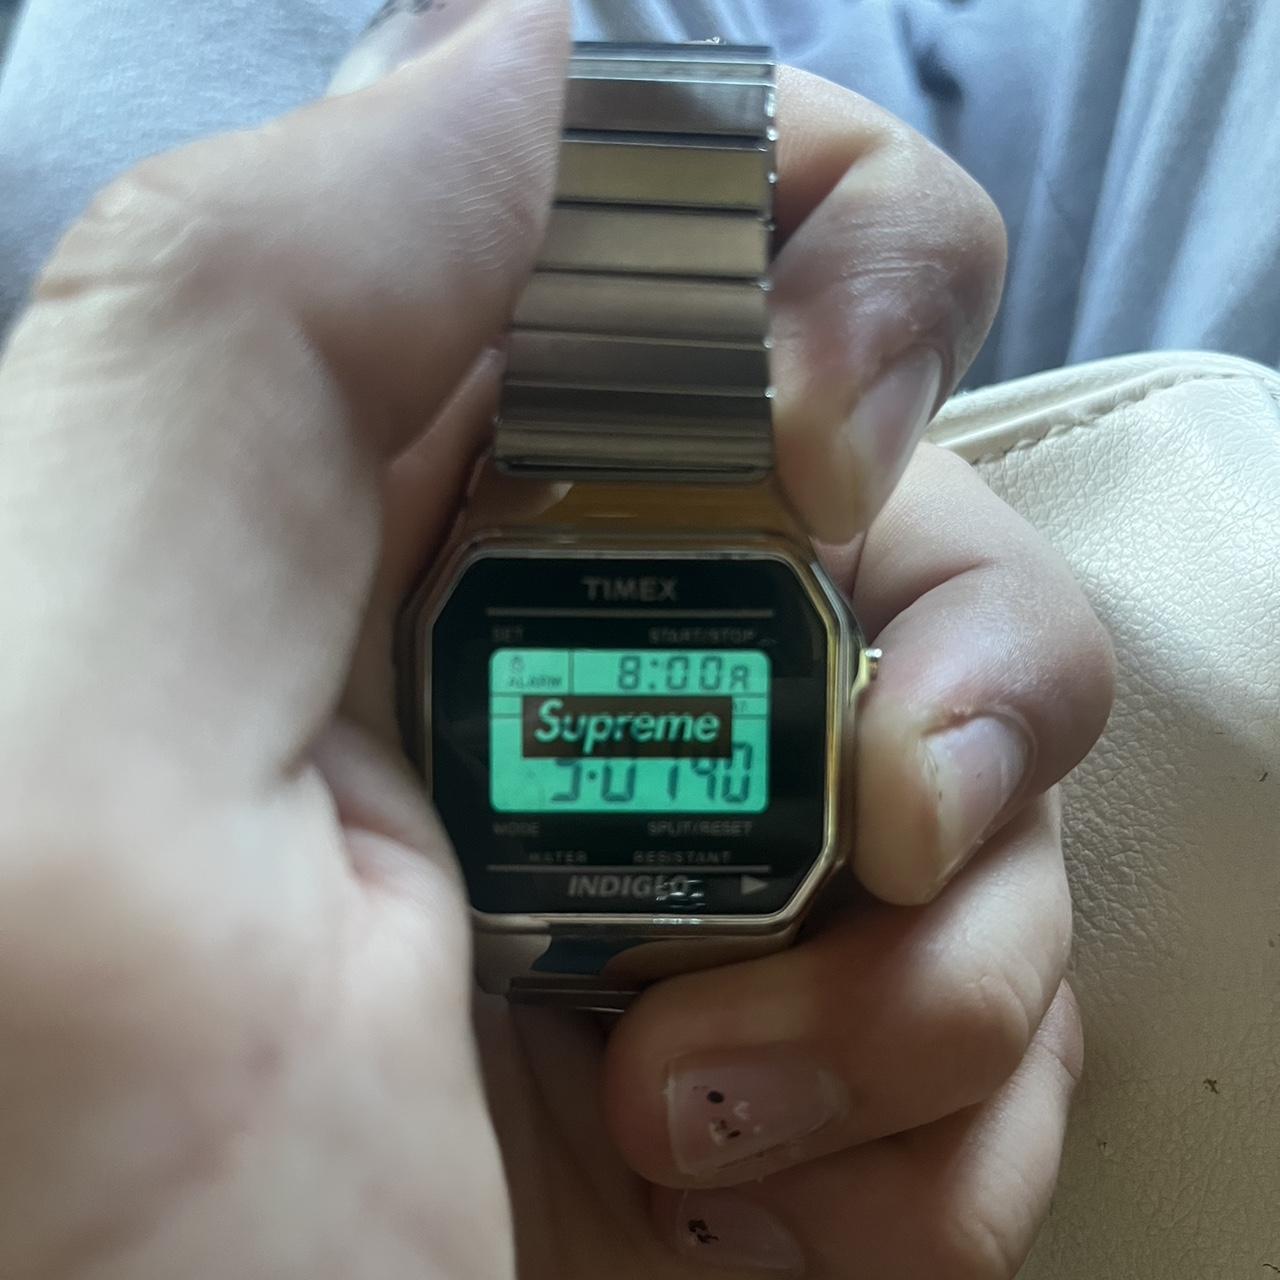 Supreme 19aw Timex Digital Watch Silver digital... - Depop